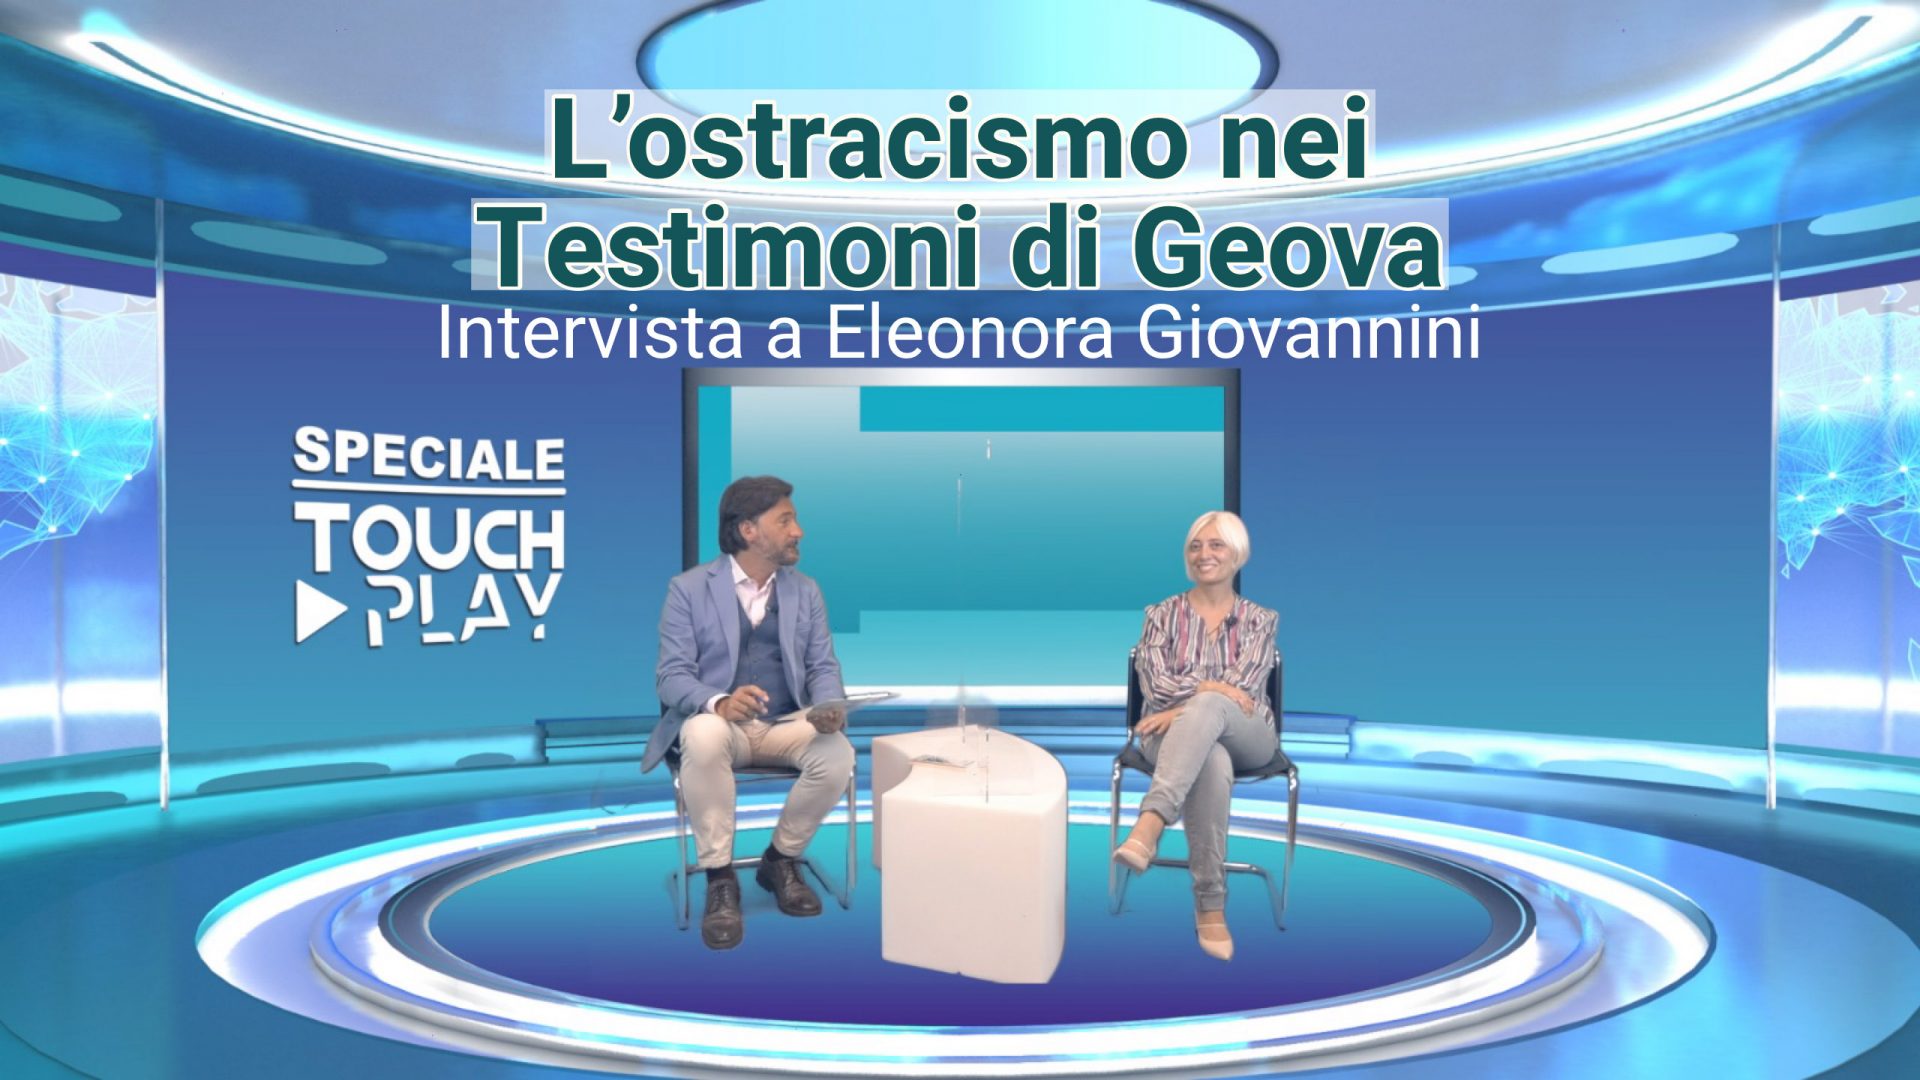 Intervista a Eleonora Giovannini, Ostracismo nei testimoni di Geova